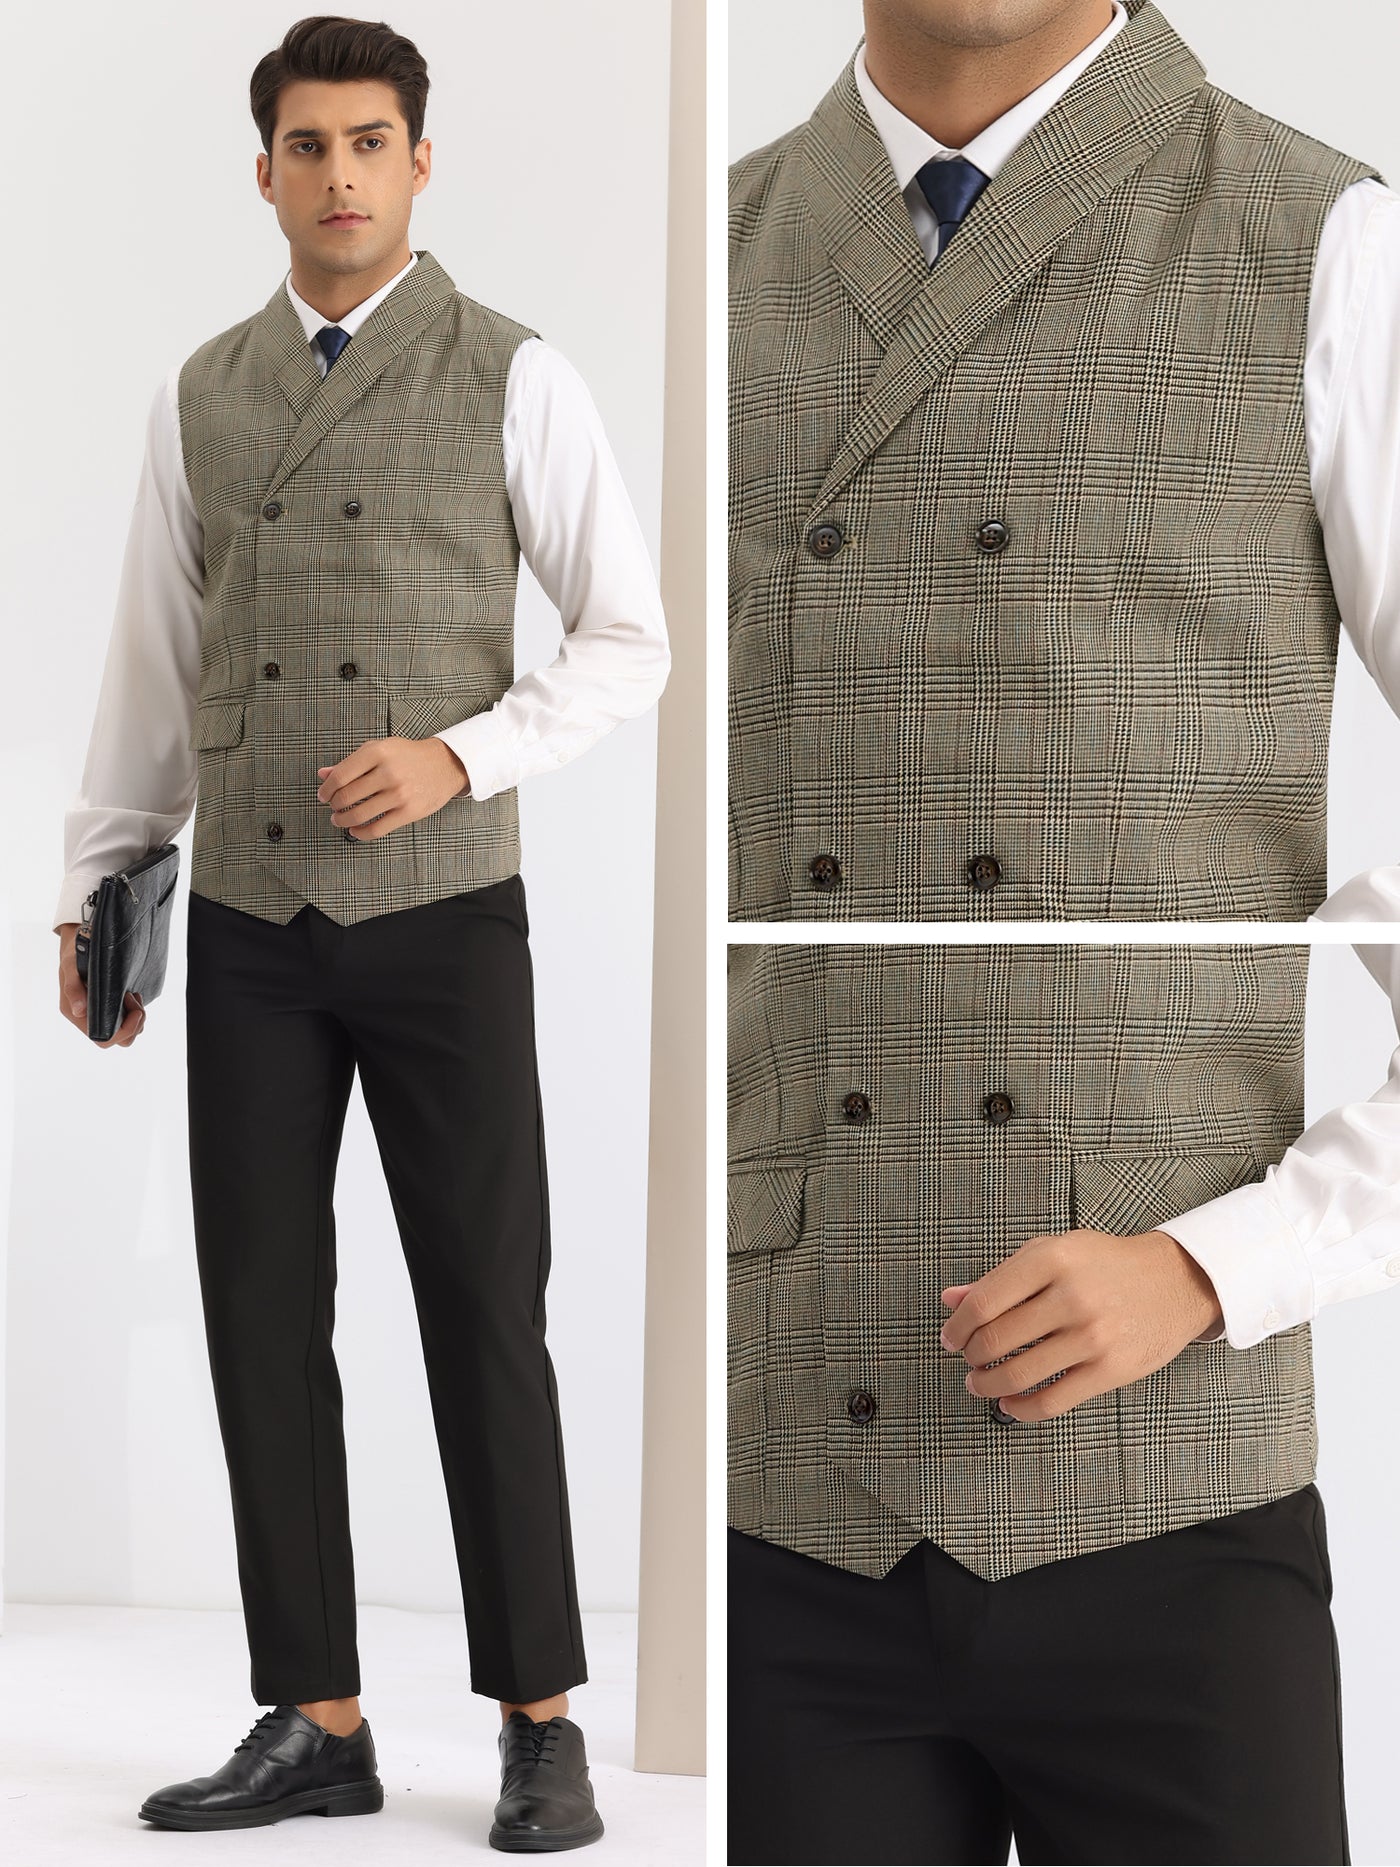 Bublédon Plaid Waistcoat for Men's Slim Fit Shawl Lapel Double Breasted Business Suit Vest